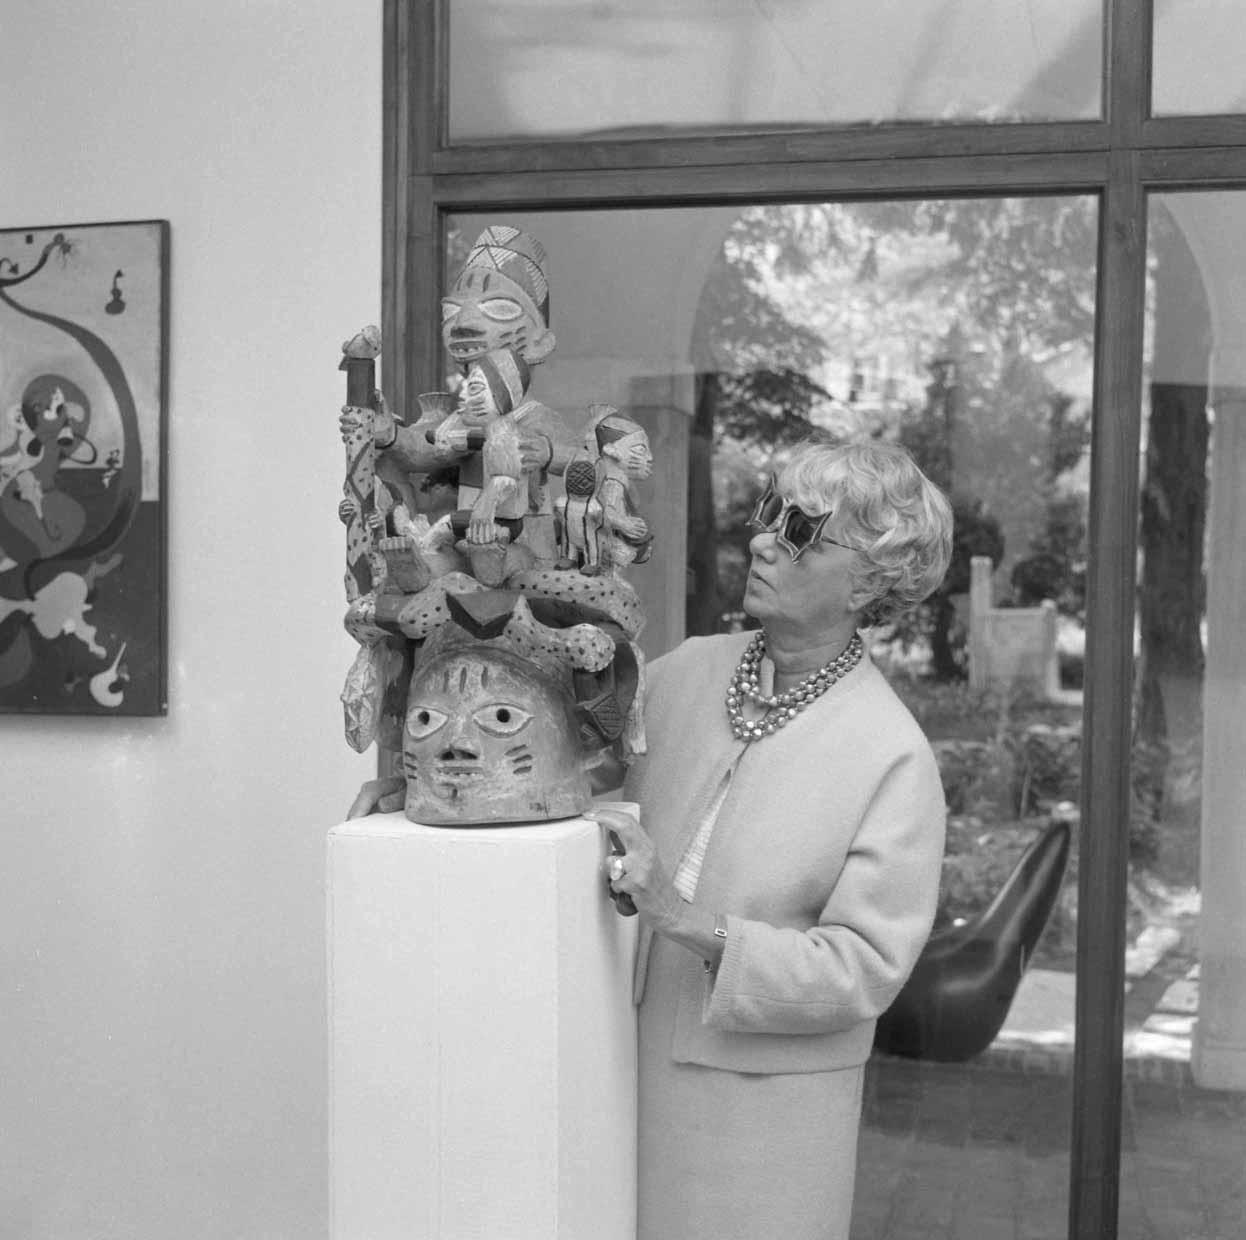 Peggy Guggenheim neben einer Skulptur ihrer Sammlung afrikanischer Skulpturen in Venedig, Ende der 60er Jahre.